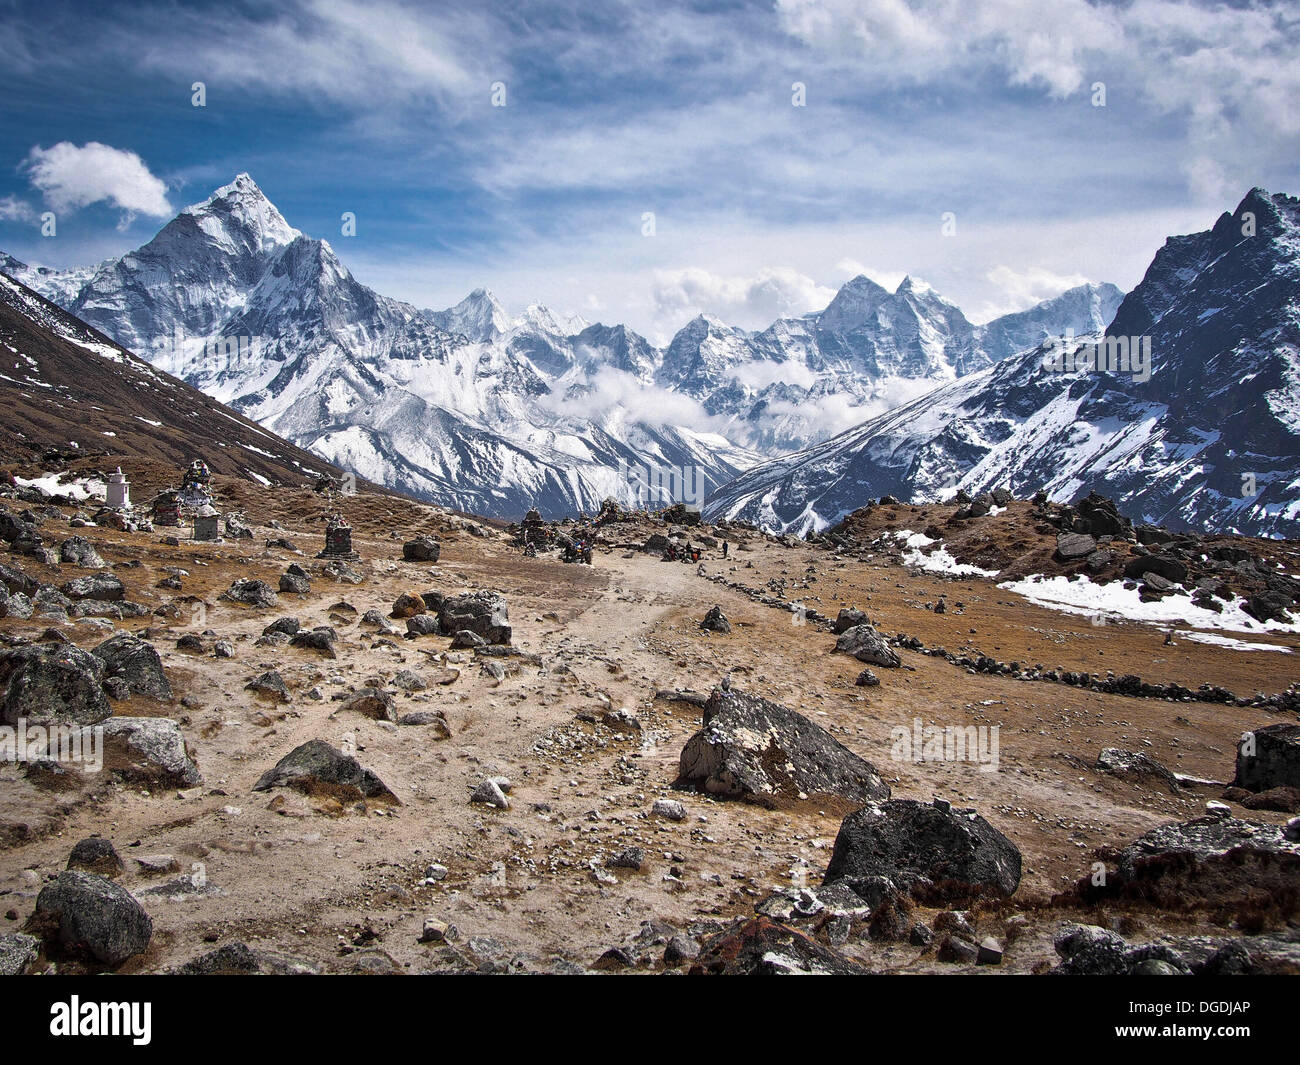 L'Ama Dablam (à gauche) et d'autres sommets le long du trek au camp de base de l'Everest, au Népal. Banque D'Images